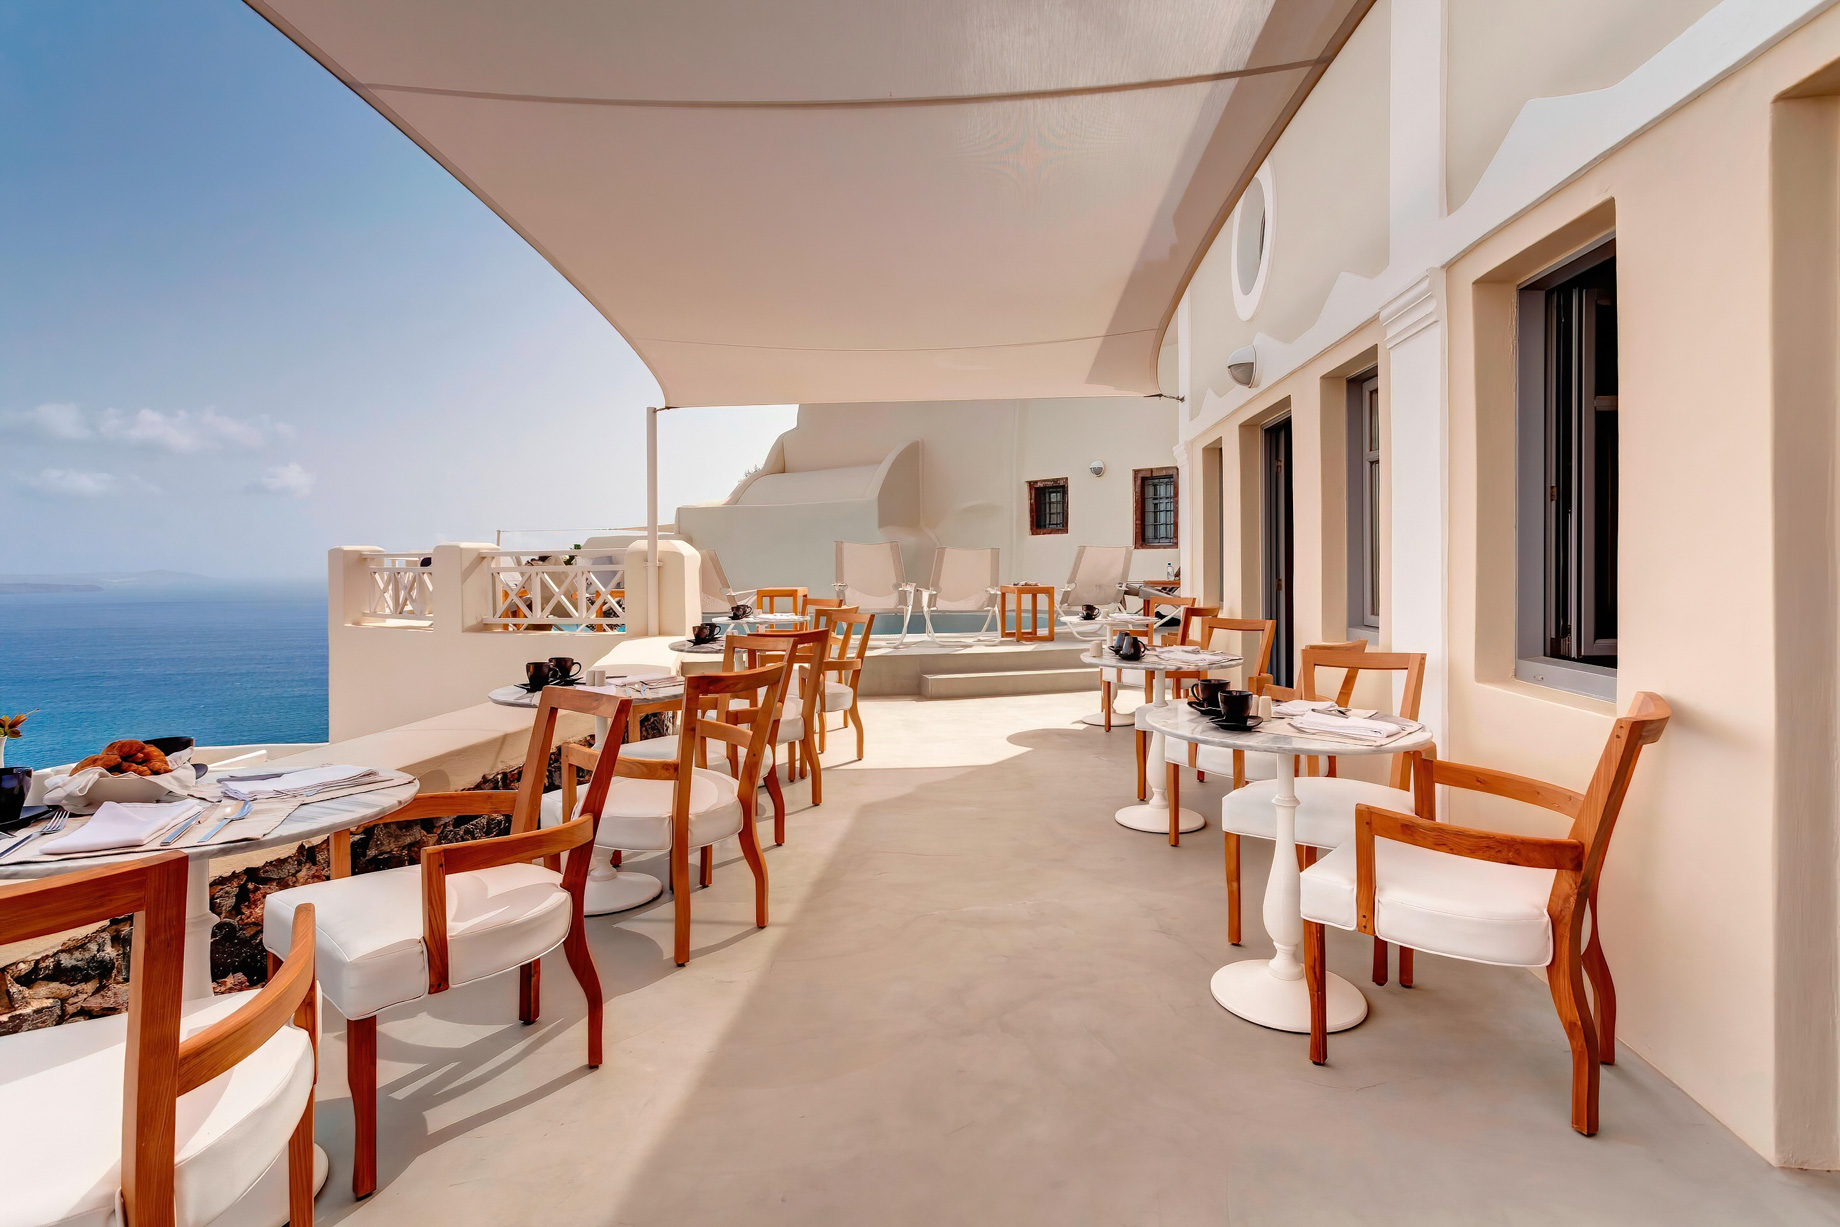 Mystique Hotel Santorini – Oia, Santorini Island, Greece – Captain’s Lounge Terrace